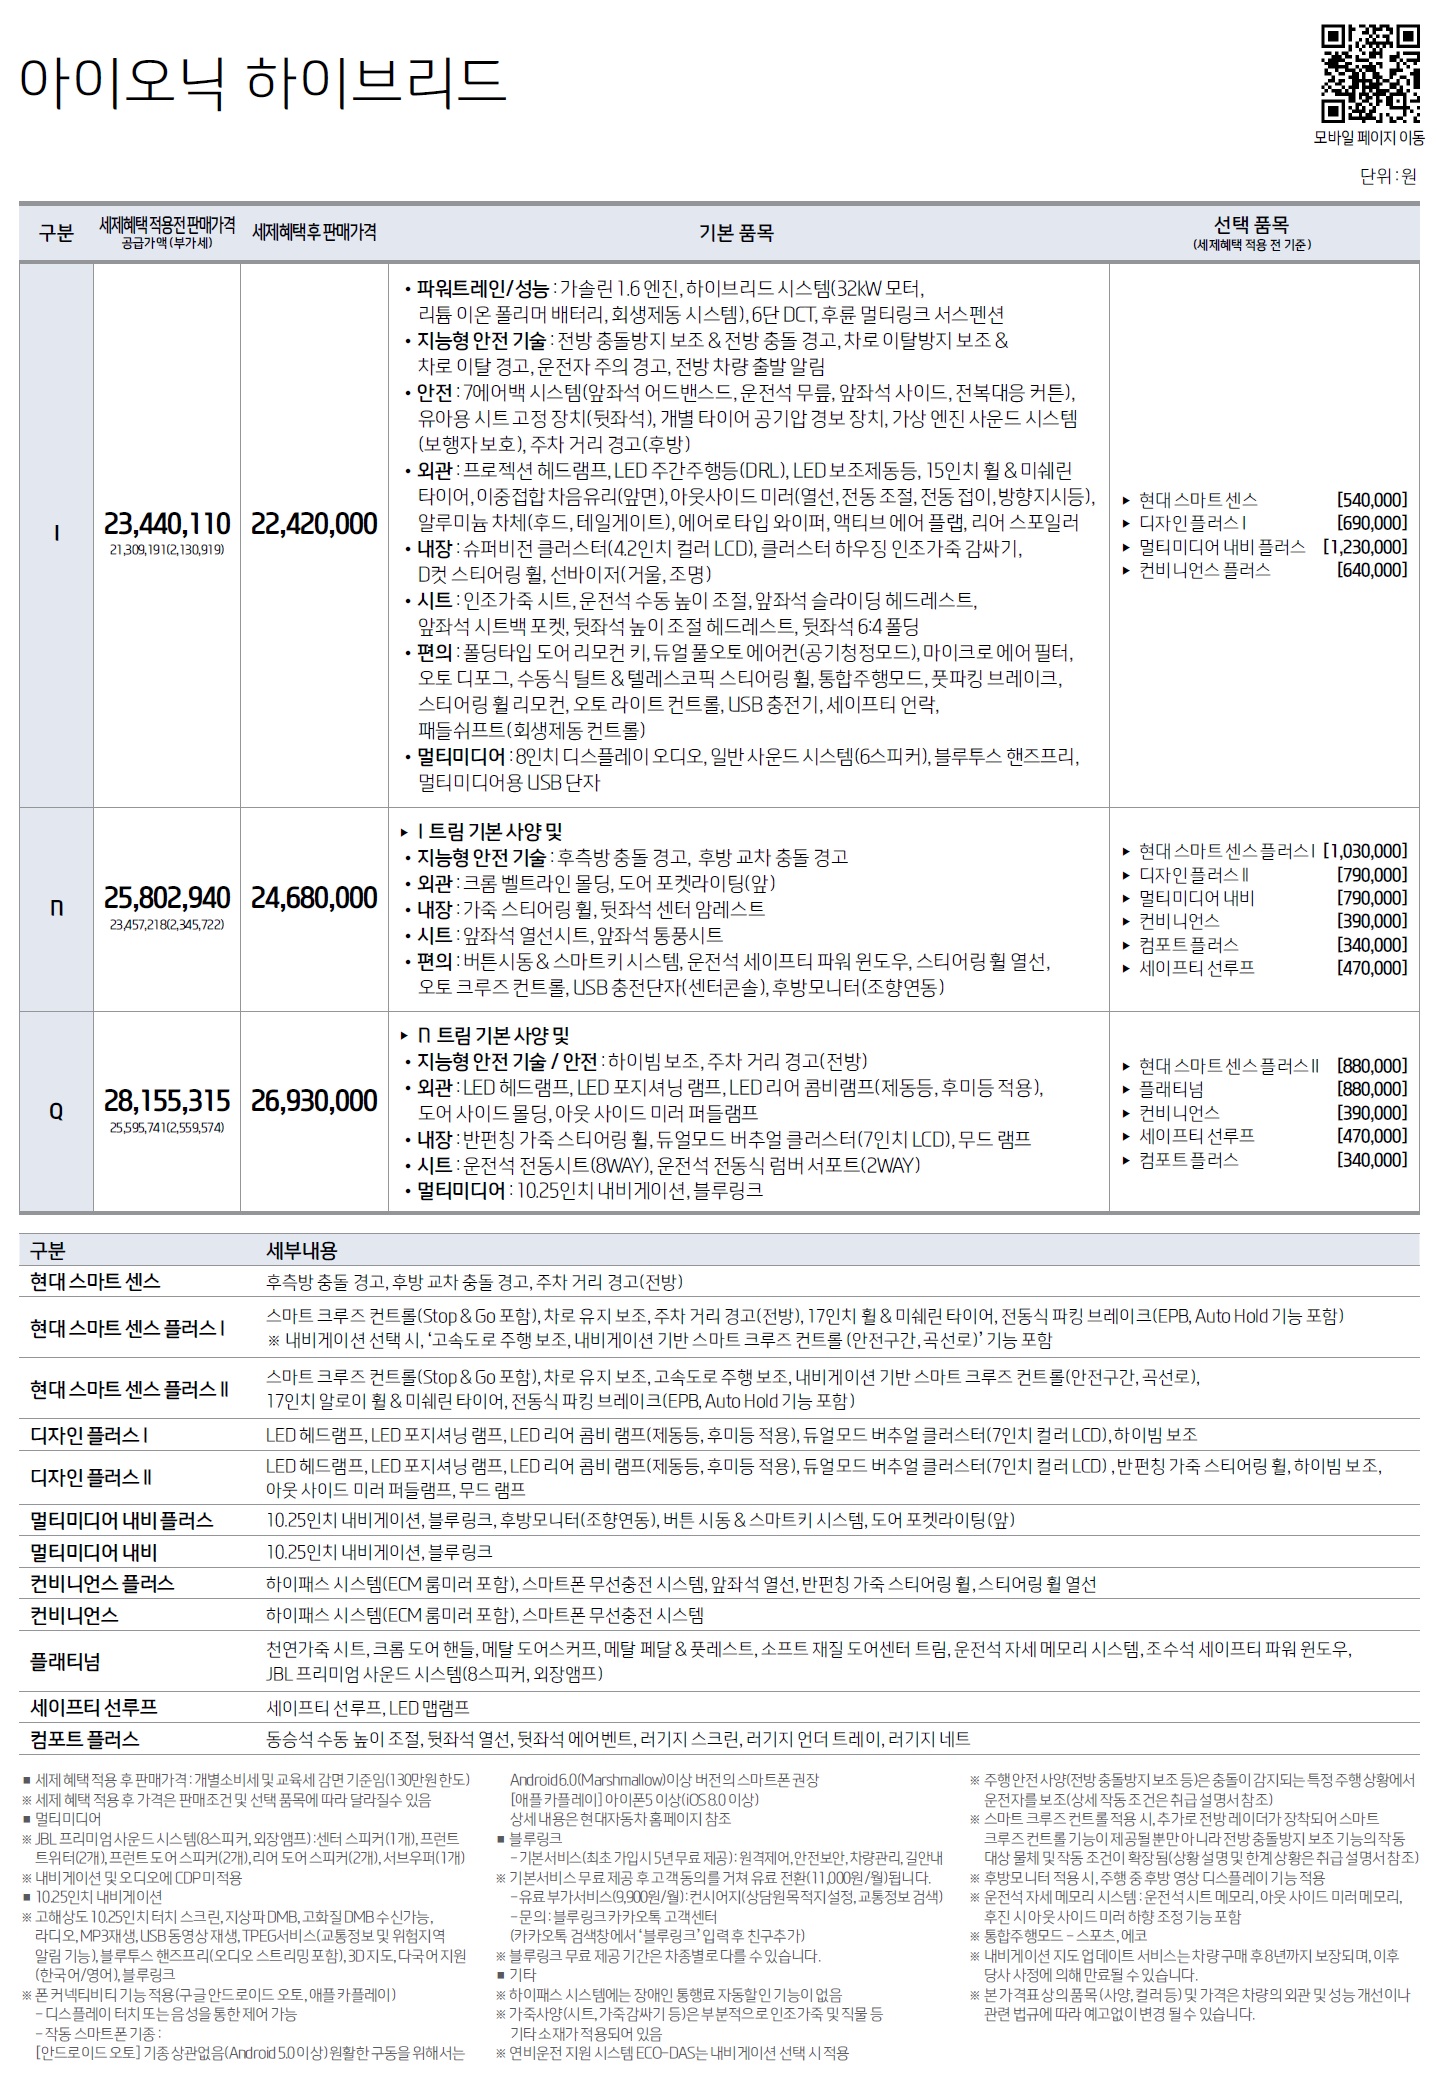 아이오닉 하이브리드 가격표 - 2019년형 05월 -1.jpg